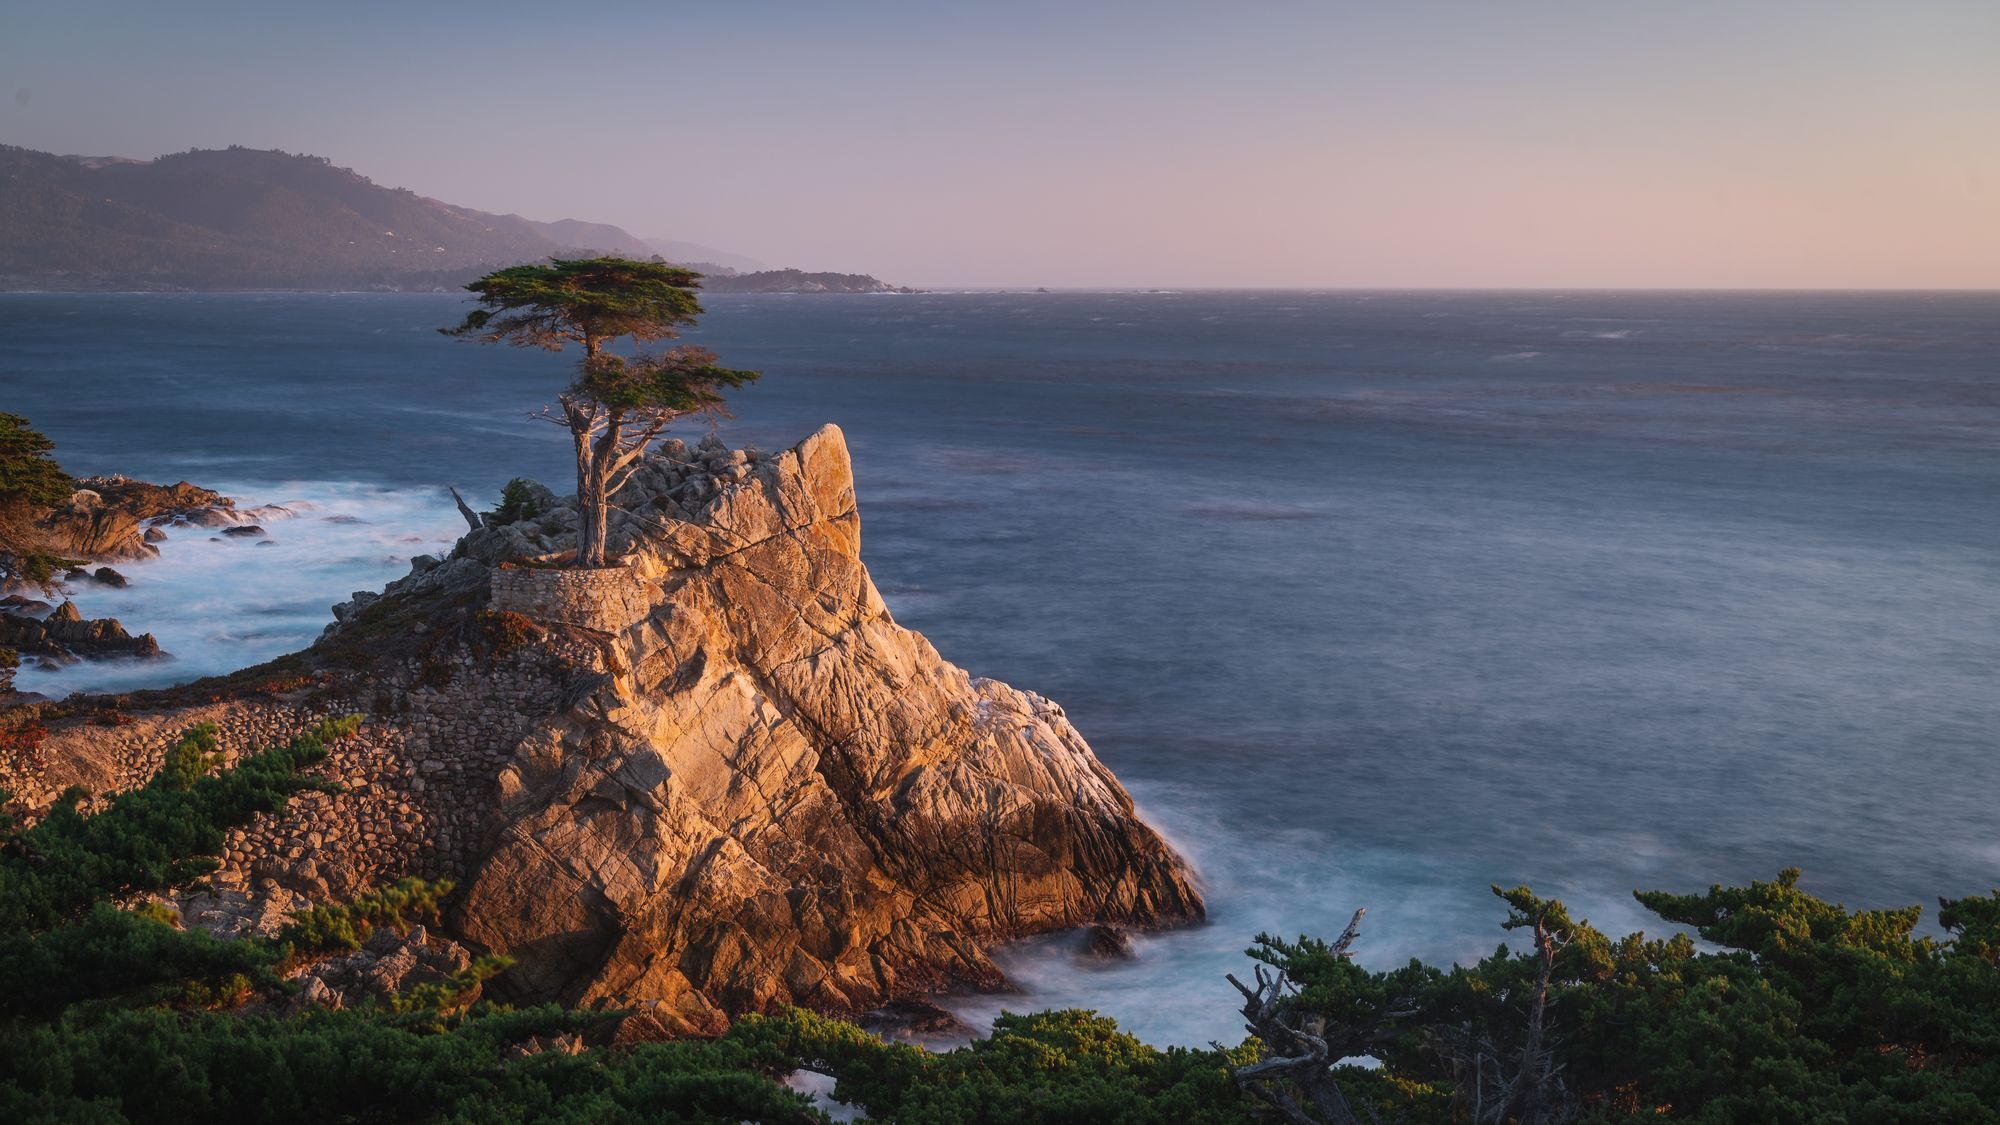 Трое друзей создали ландшафтные обои для macOS Monterey. Как установить?